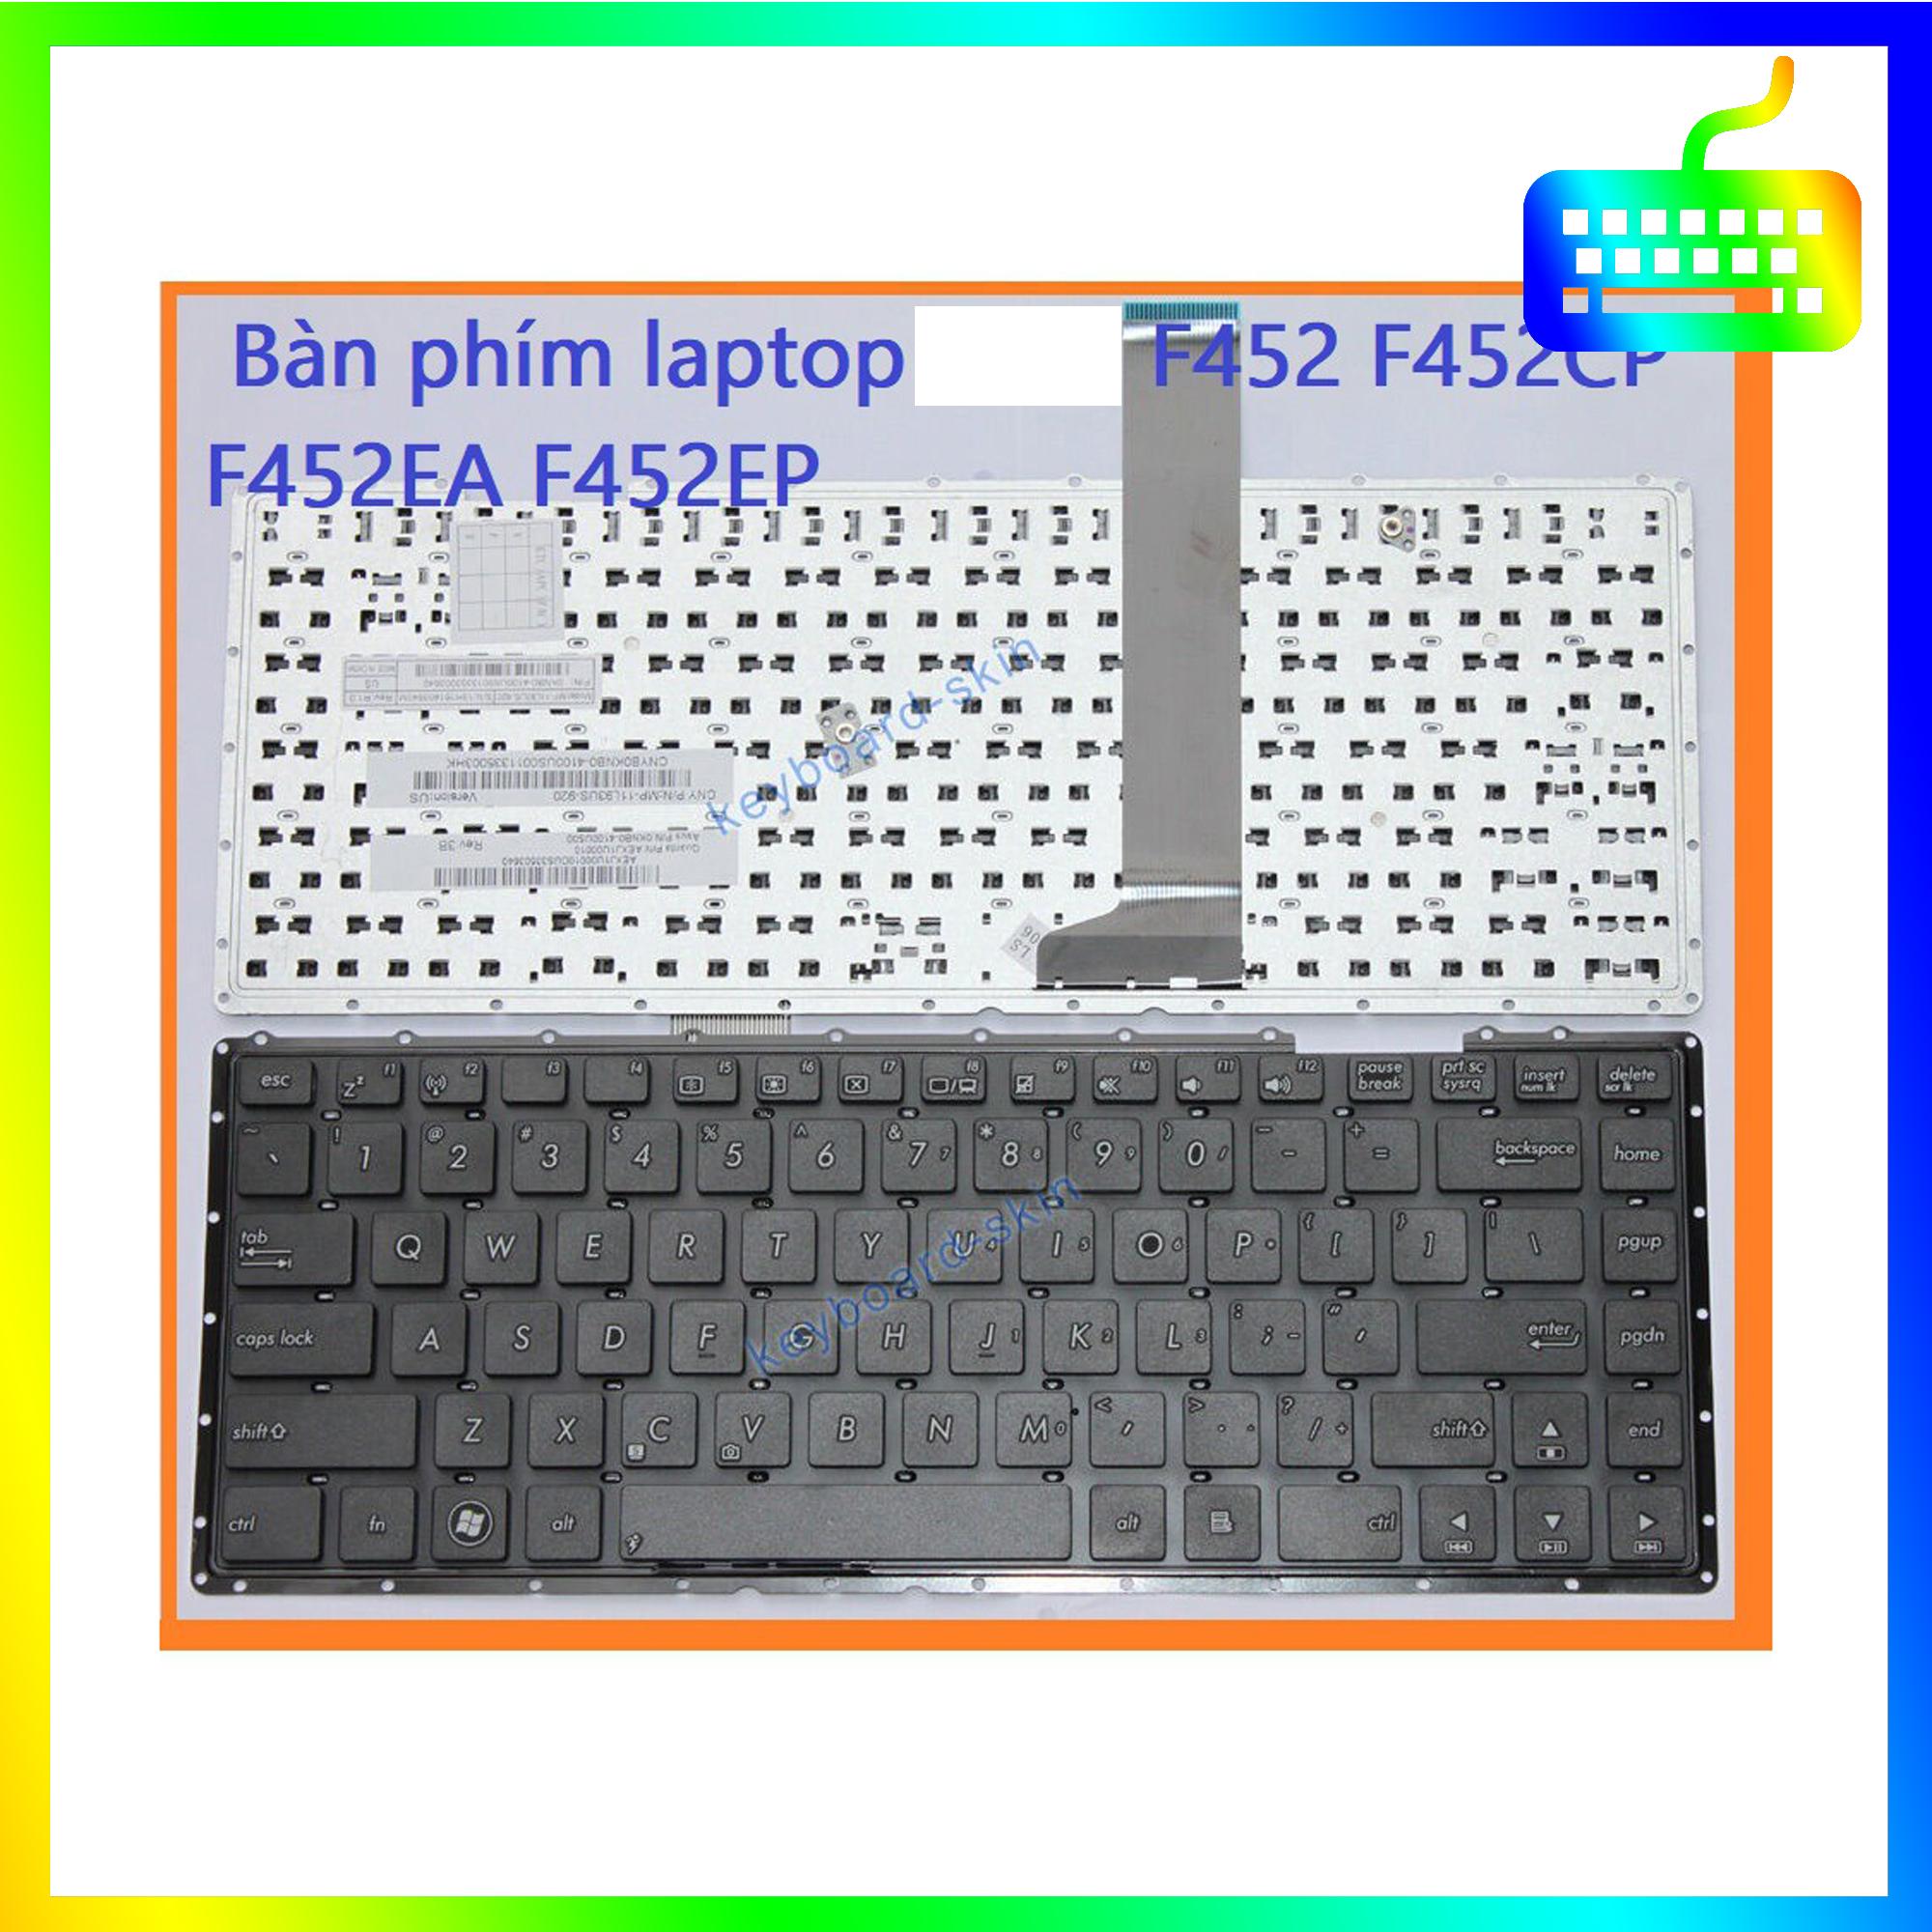 Bàn phím dành cho laptop Asus F452 F452CP F452EA F452EP - Hàng Nhập Khẩu - Sản phẩm mới 100%